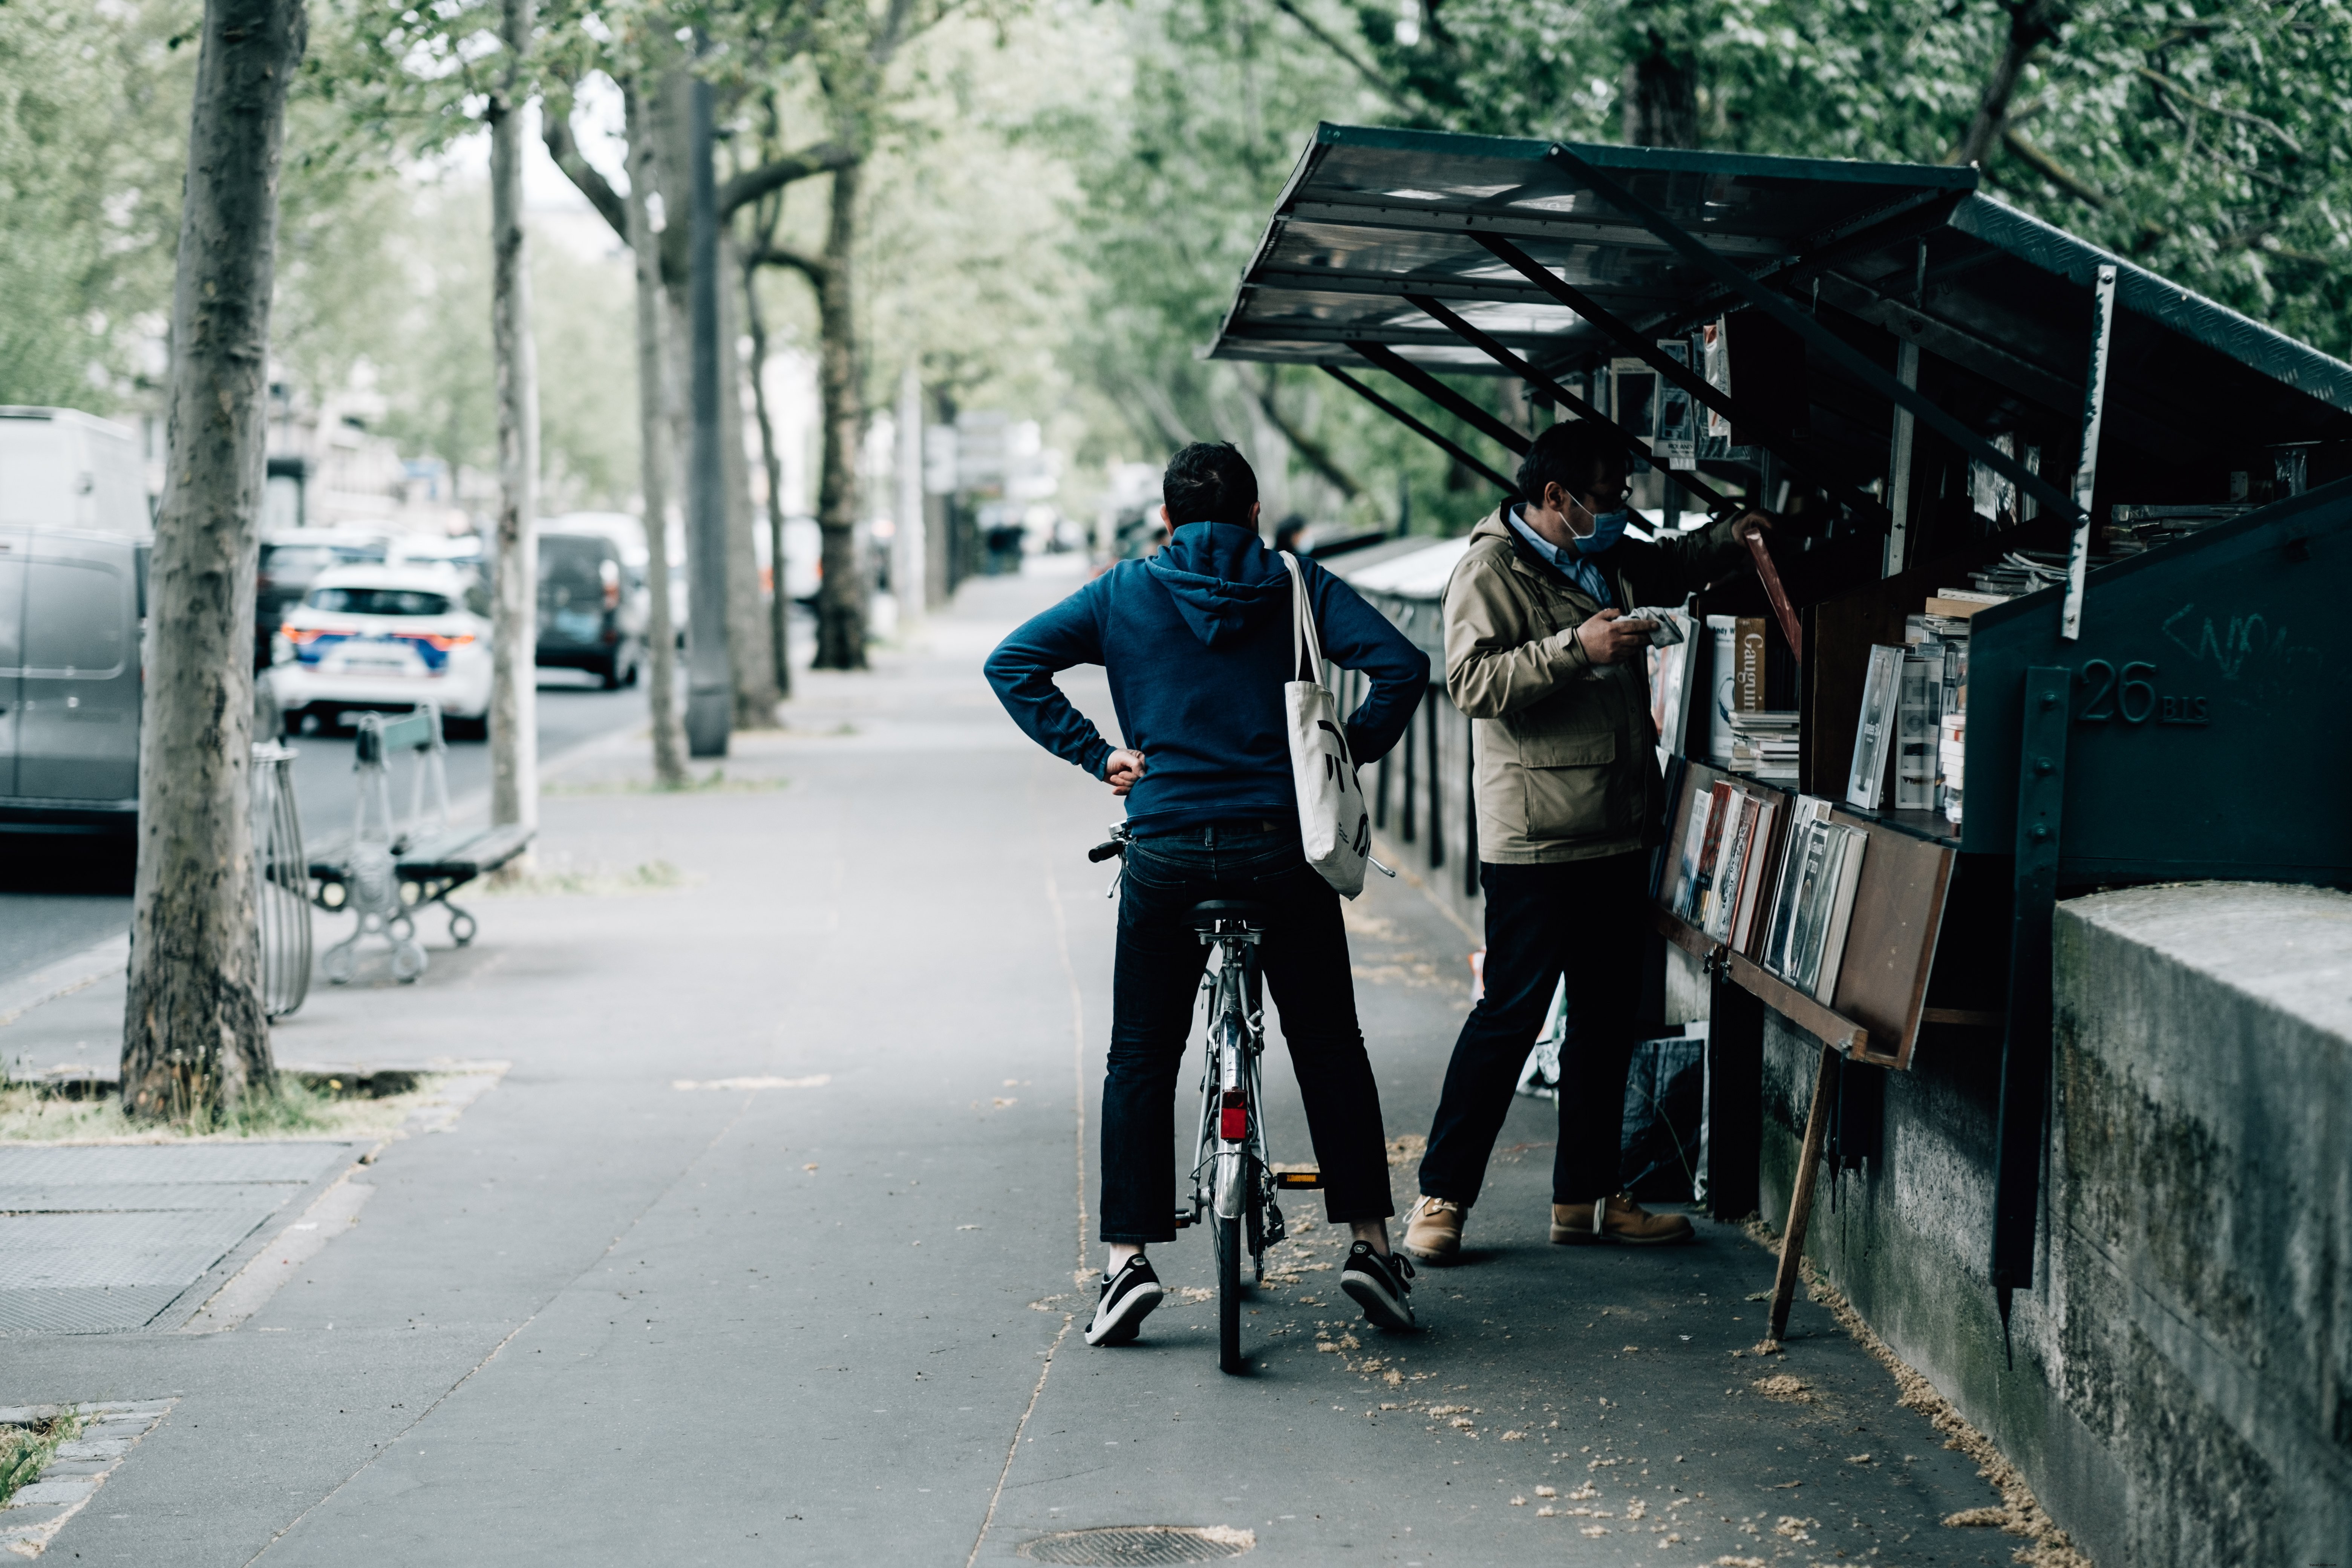 La persona in bicicletta aspetta che il suo amico acquisti libri Foto 